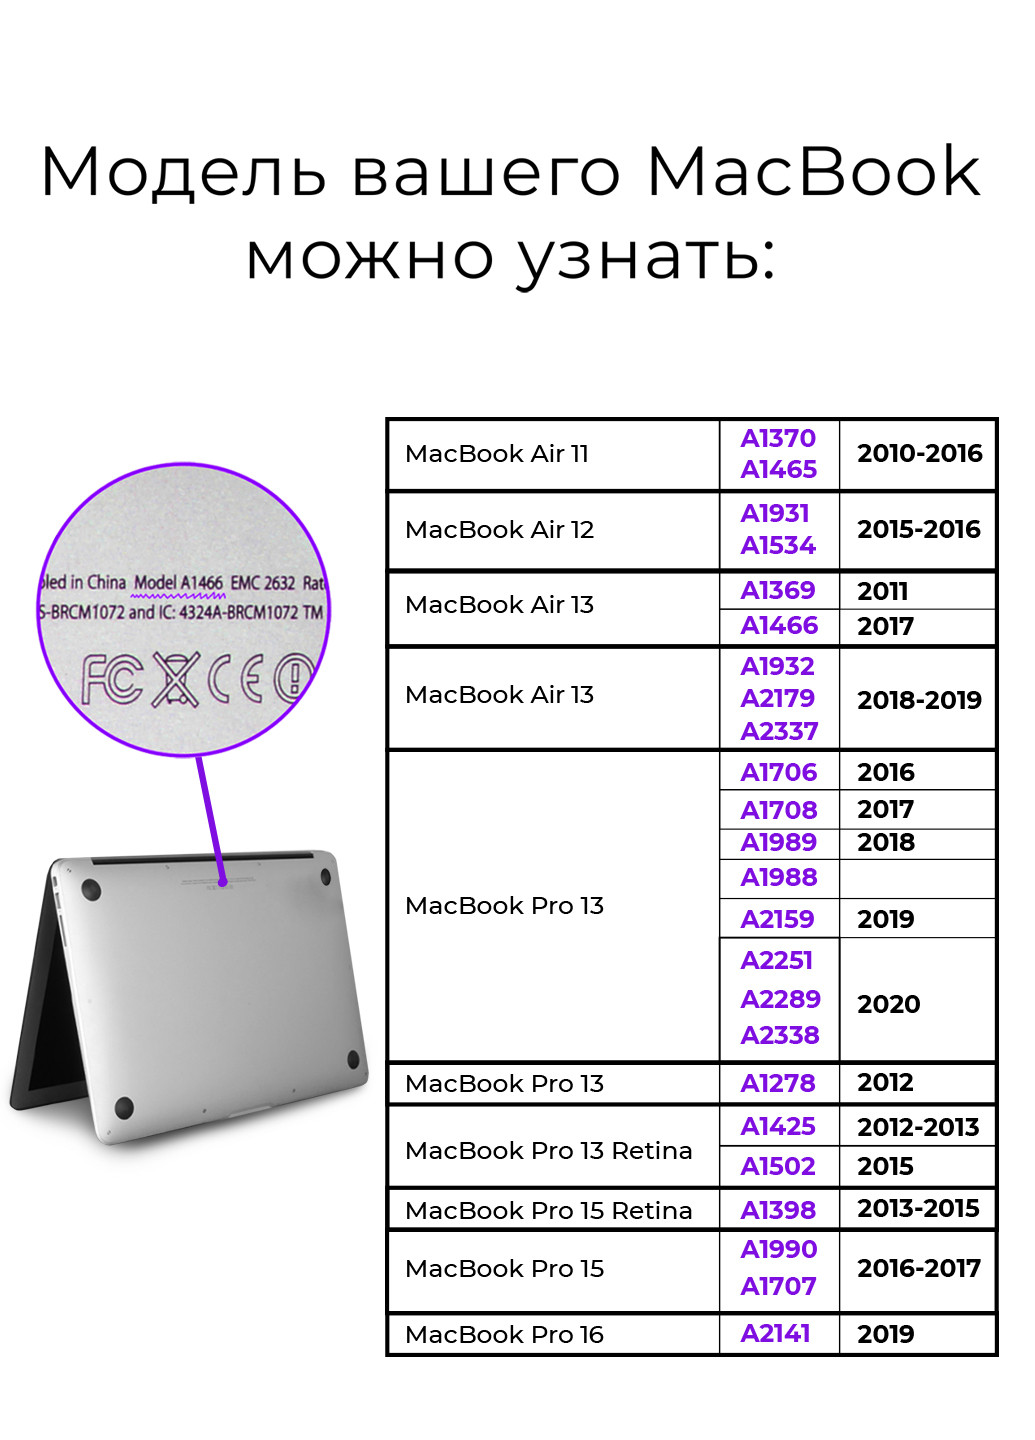 Чехол пластиковый для Apple MacBook 12 A1534 / A1931 Ромбы (Rombs) (3365-2719) MobiPrint (219125832)